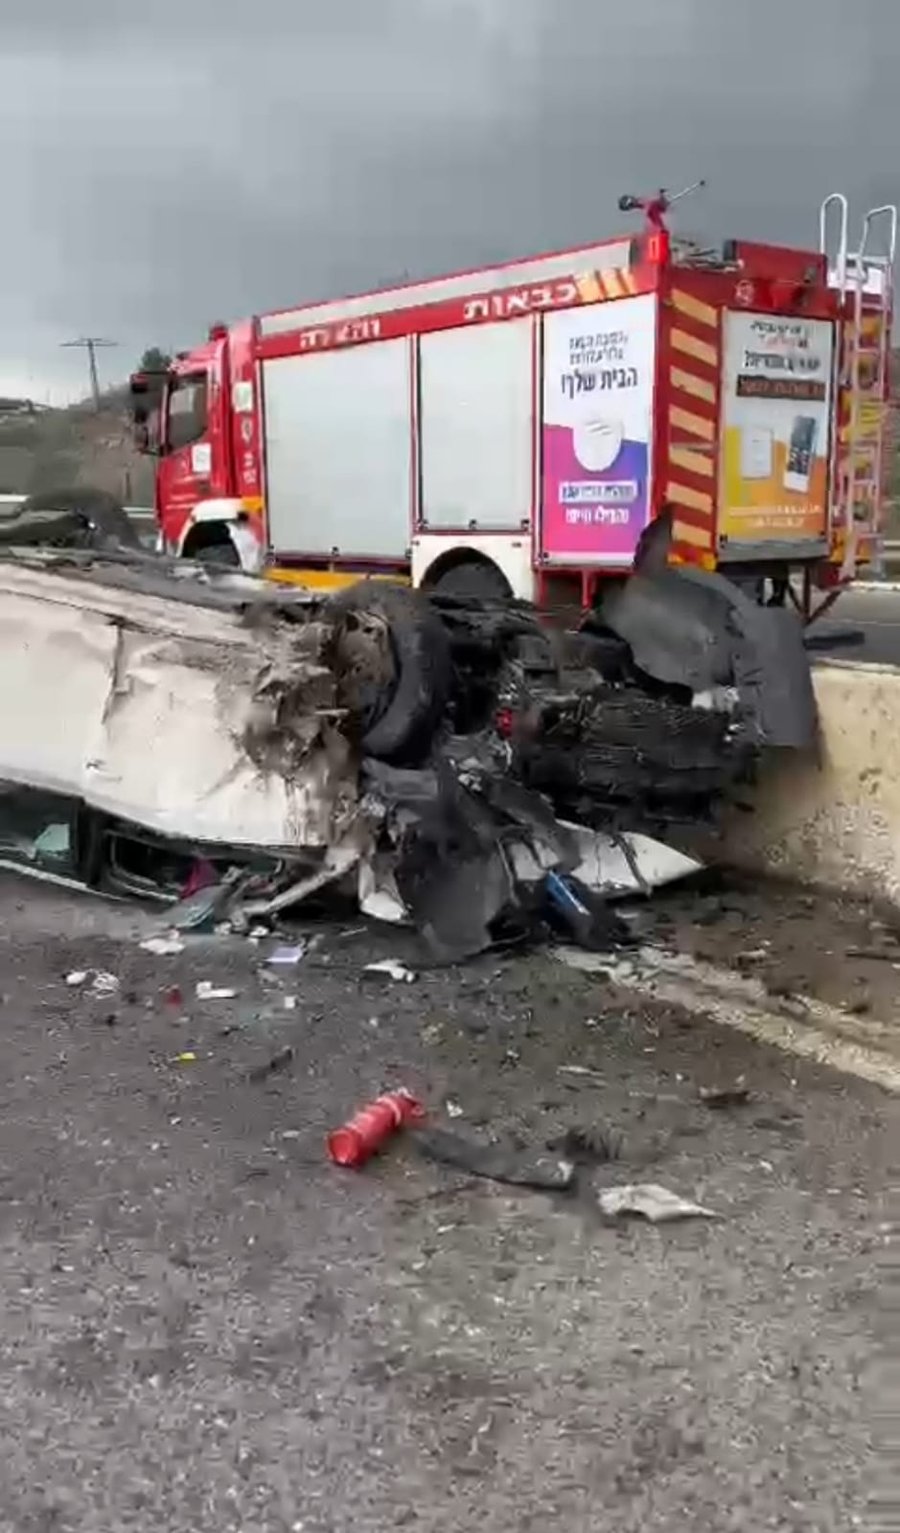 תאונה קשה בכביש 443: הרכב התהפך והנהג נהרג